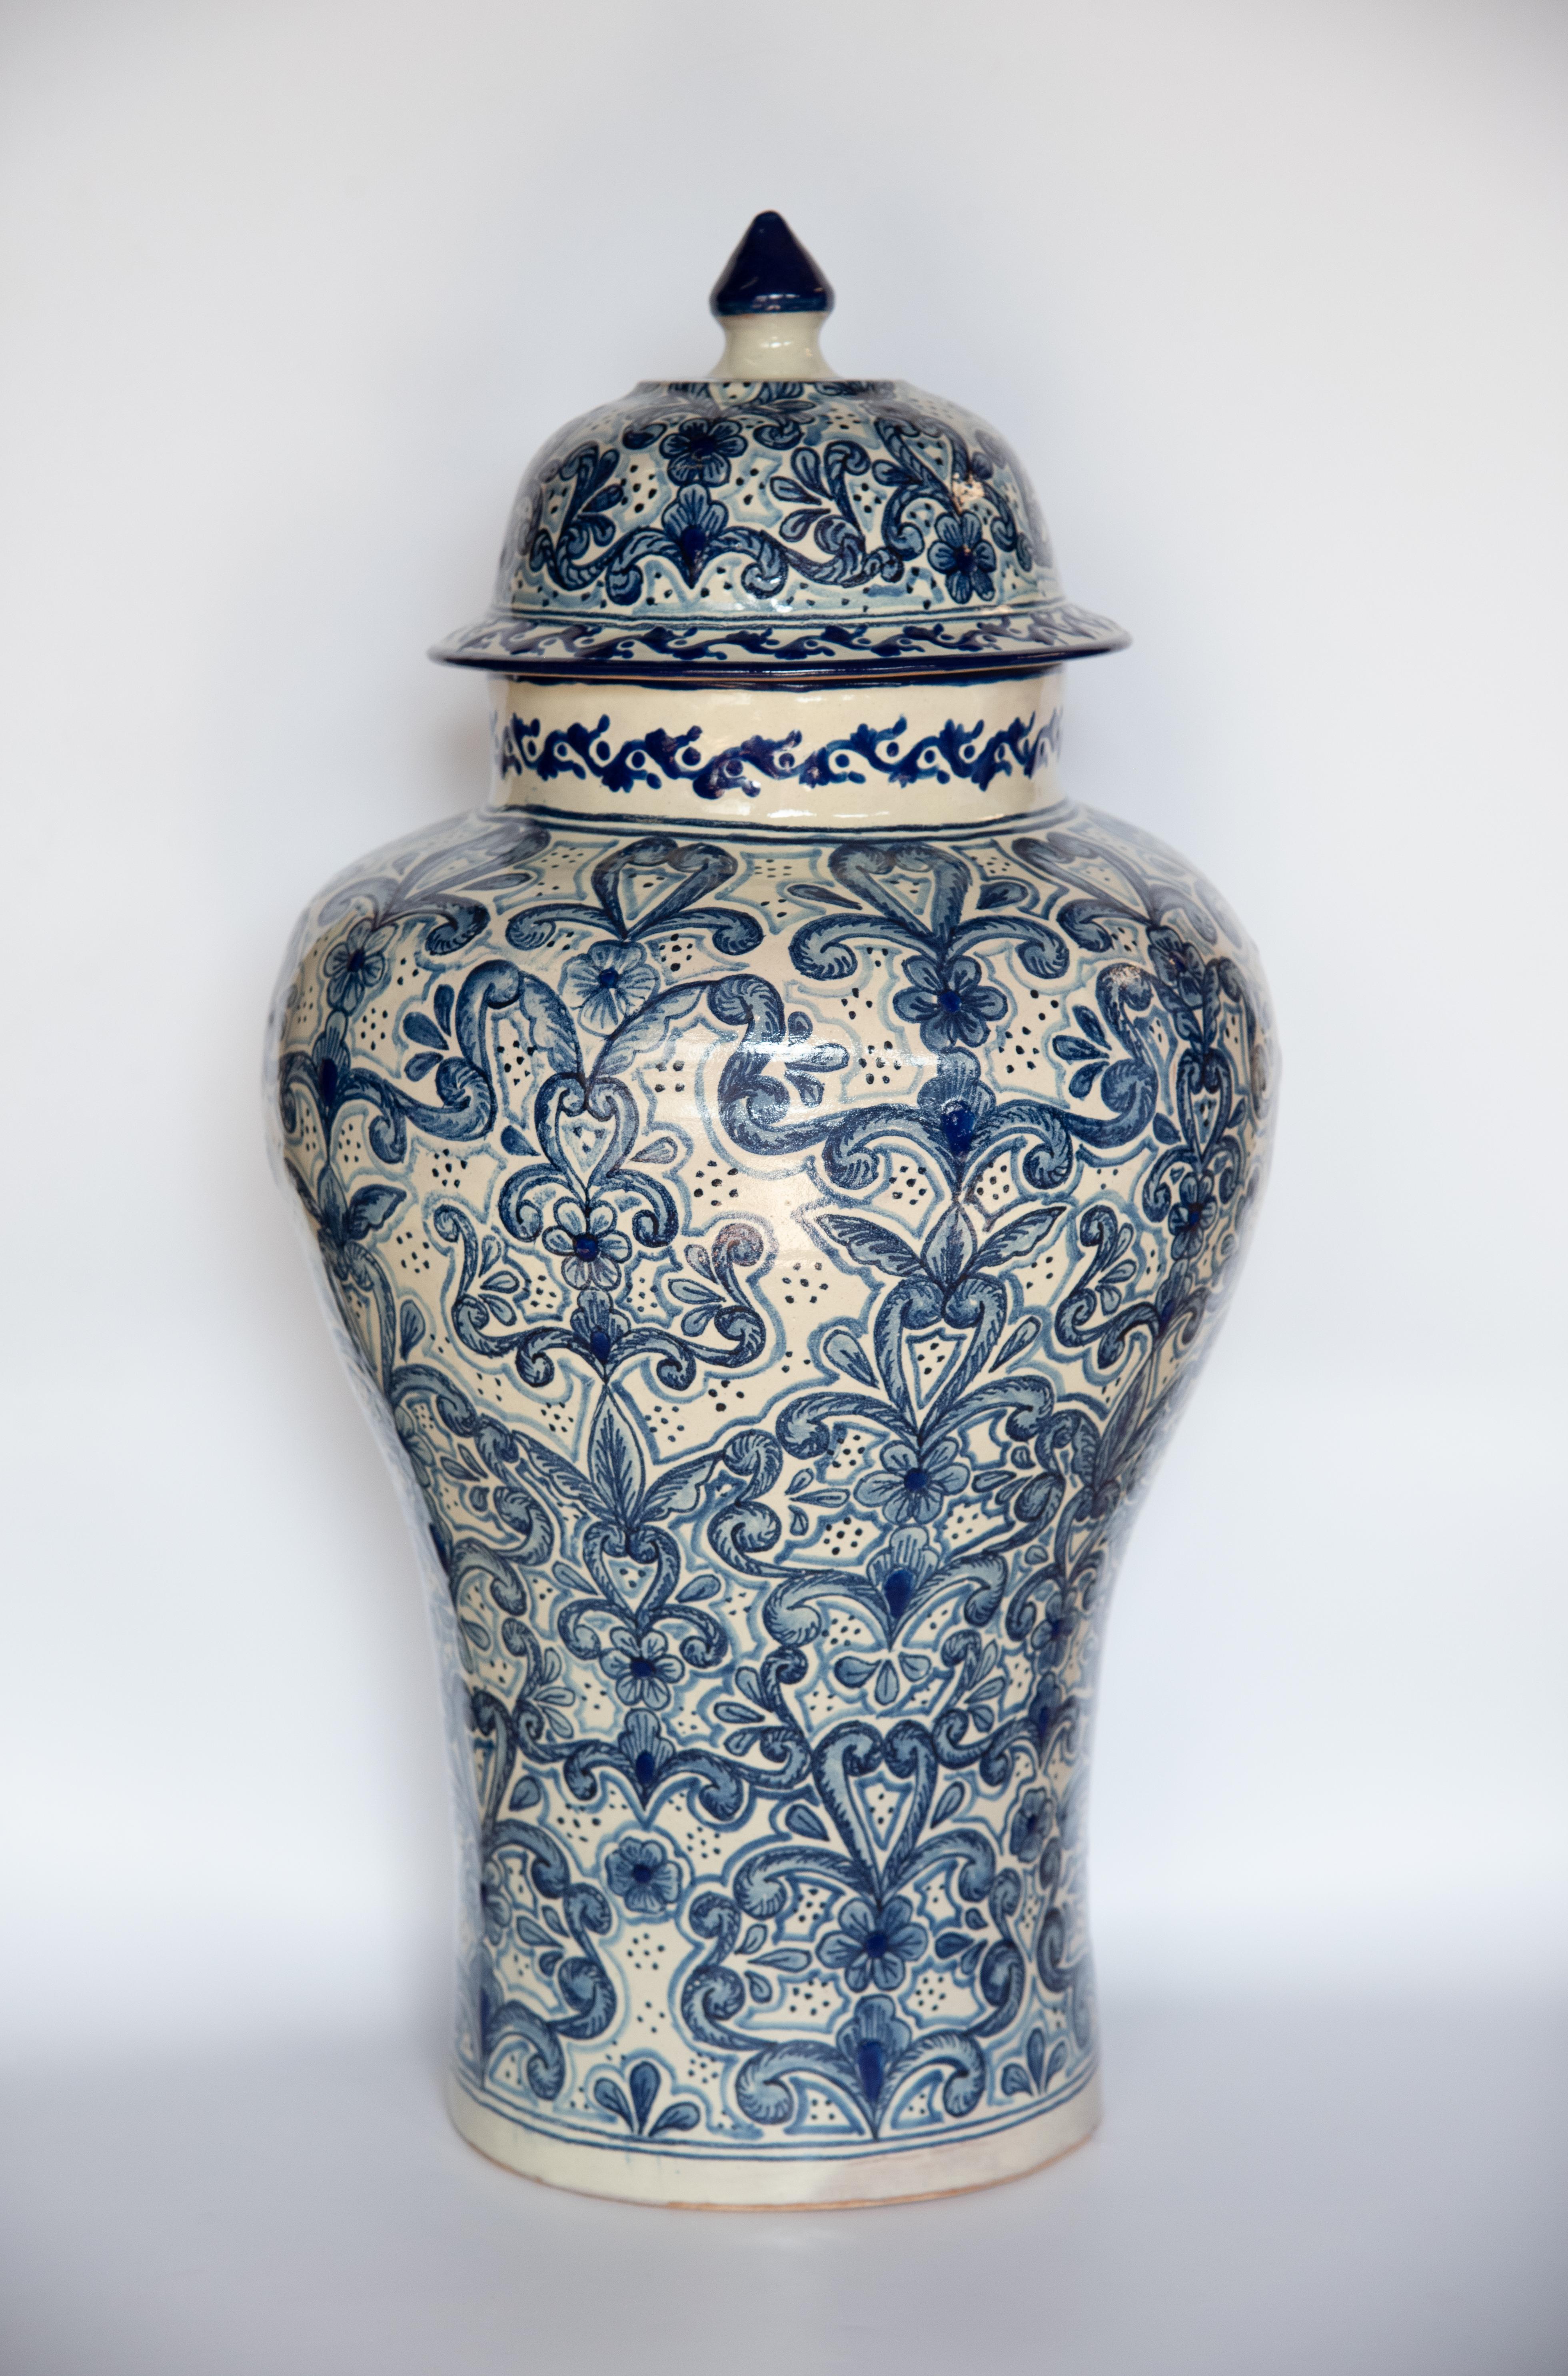 Contemporary Authentic Talavera Decorative Vase Folk Art Vessel Mexican Ceramic Blue White